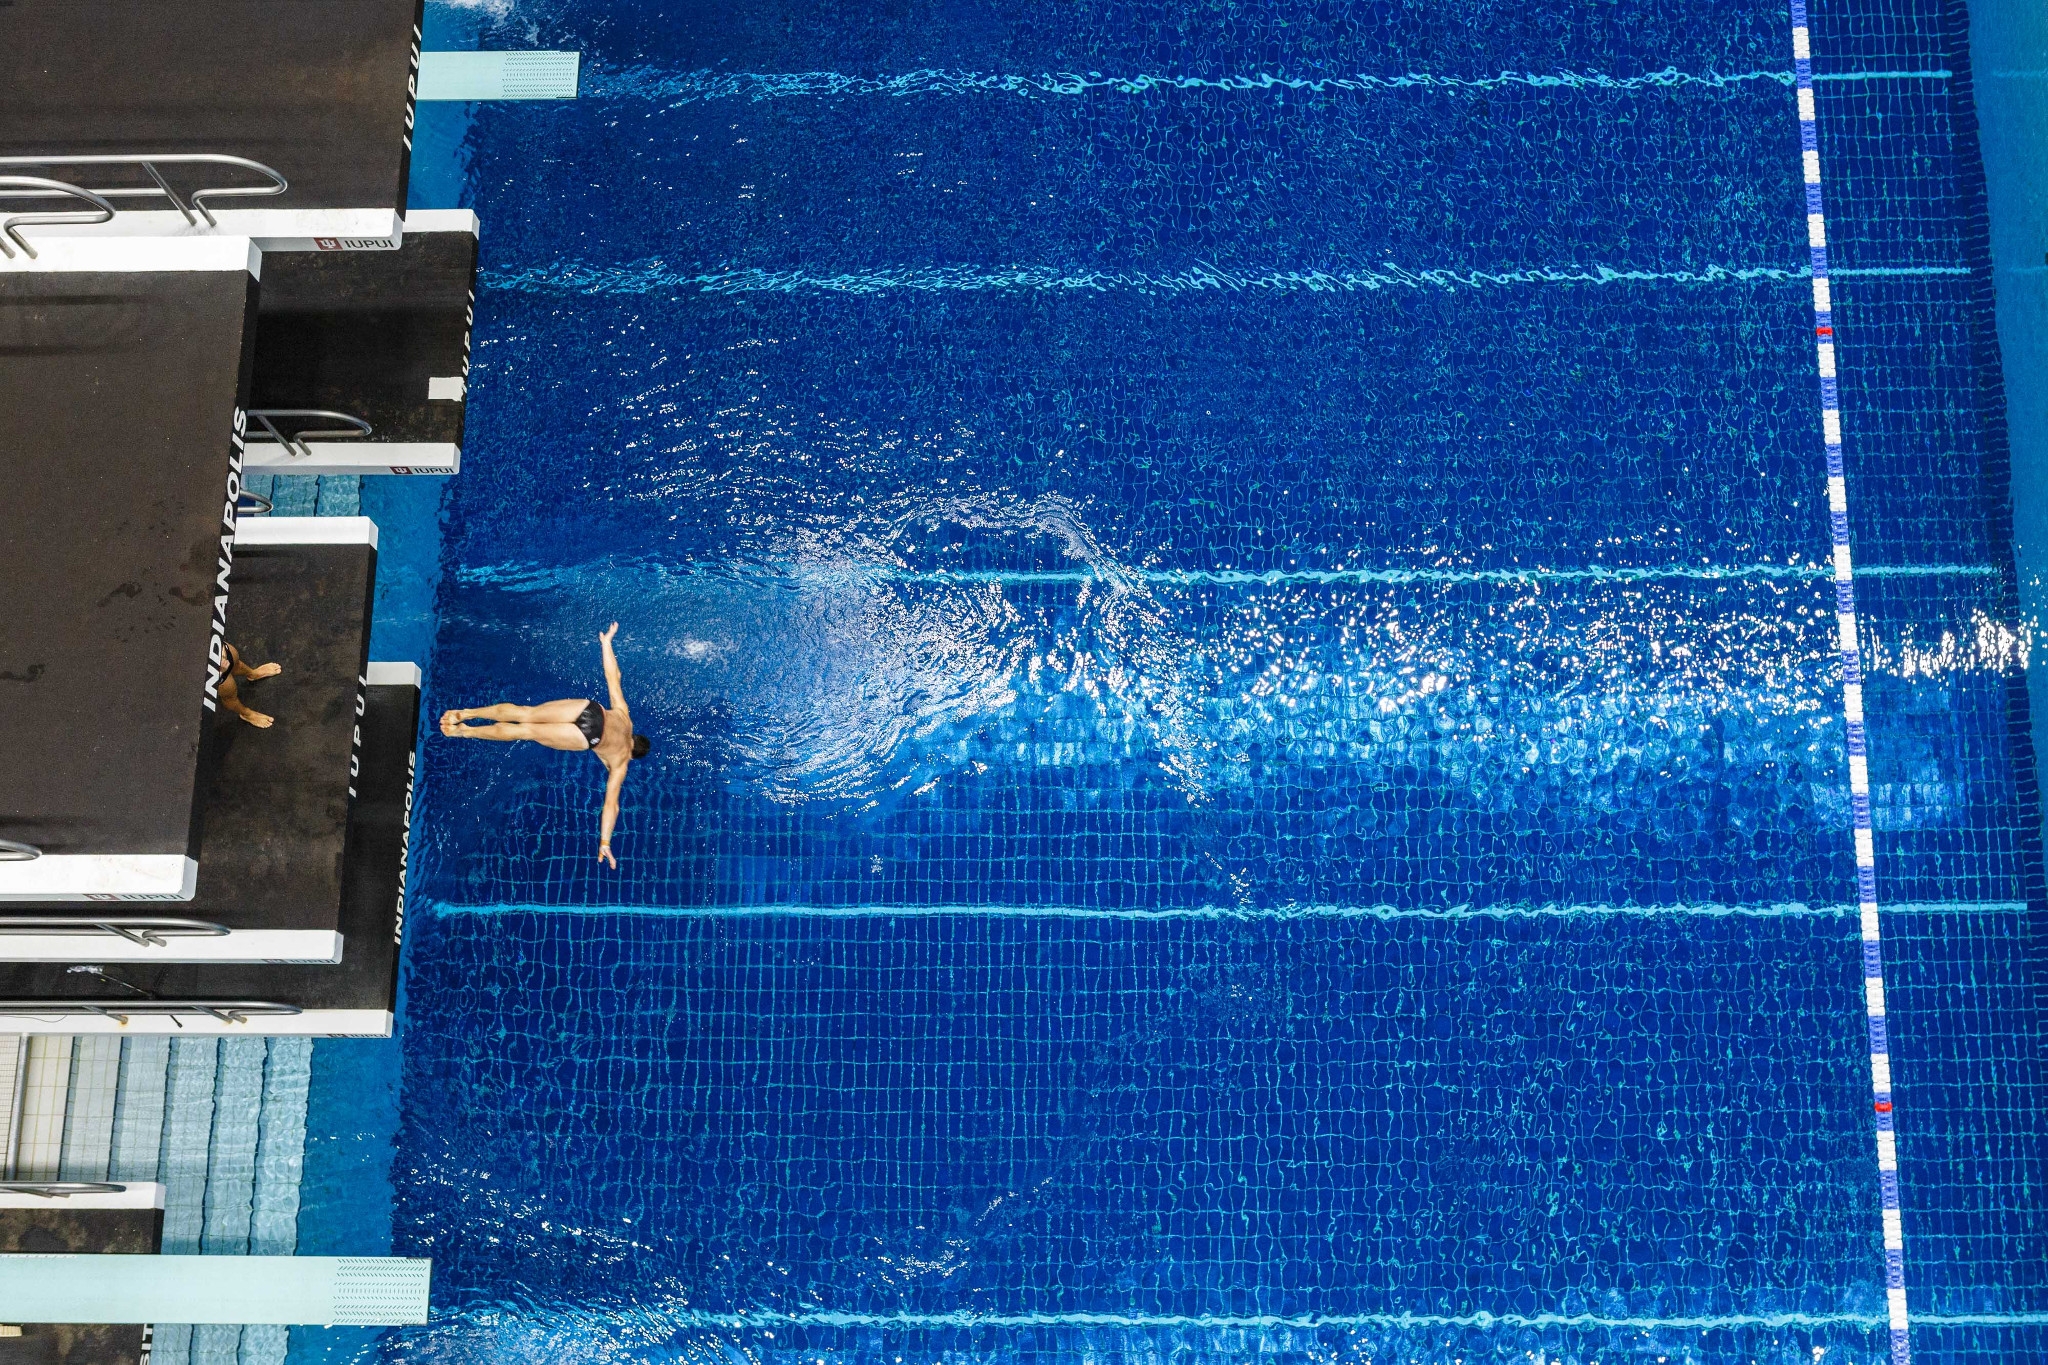 A swimmer dives into the Natatorium